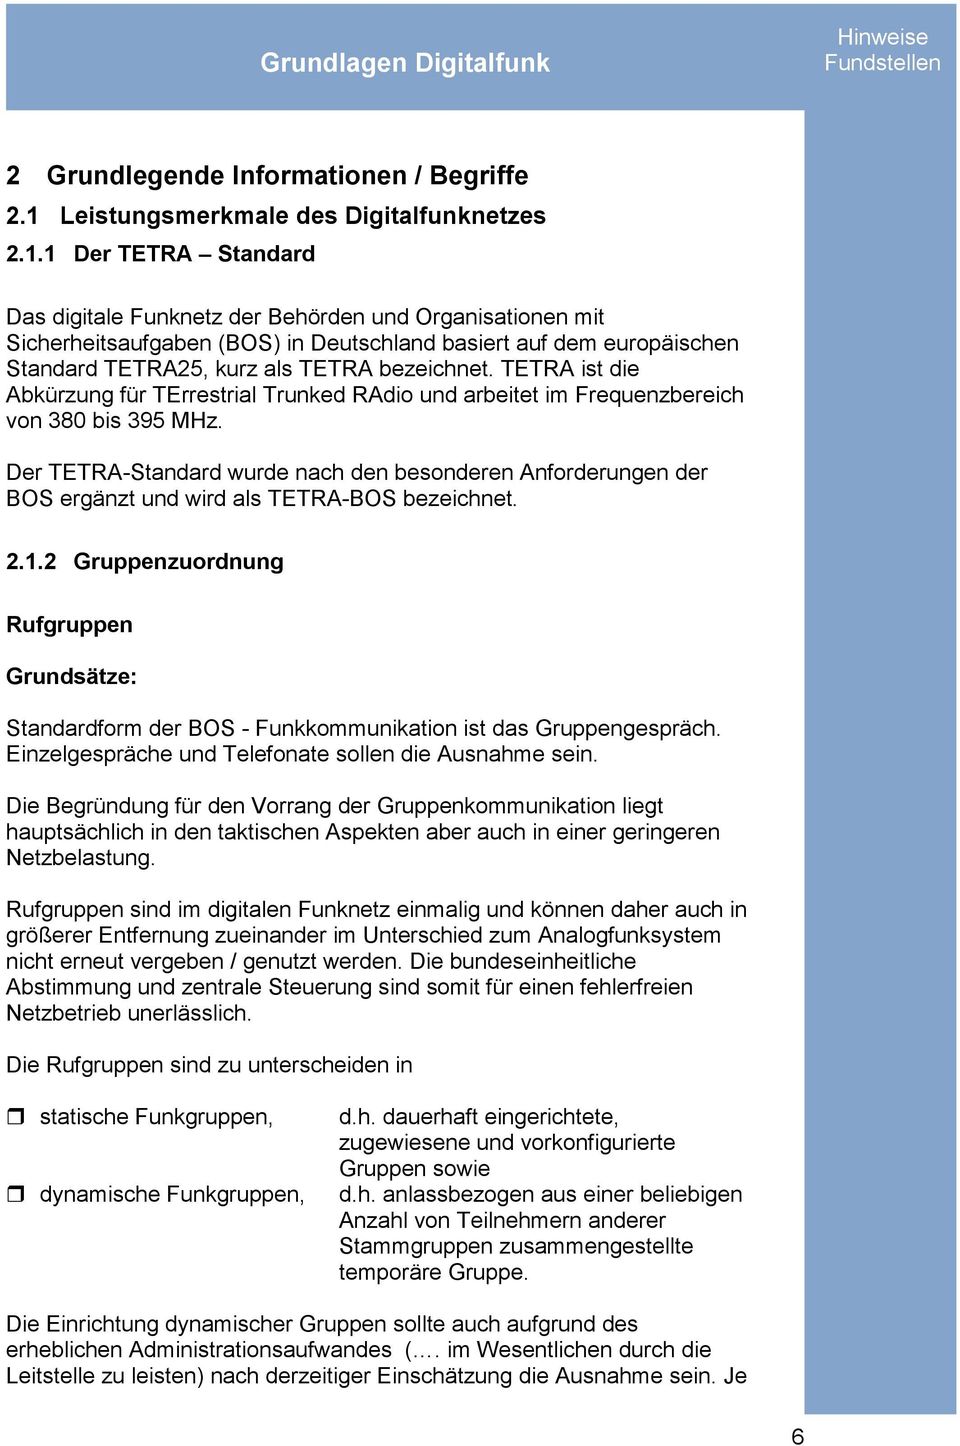 1 Der TETRA Standard Das digitale Funknetz der Behörden und Organisationen mit Sicherheitsaufgaben (BOS) in Deutschland basiert auf dem europäischen Standard TETRA25, kurz als TETRA bezeichnet.